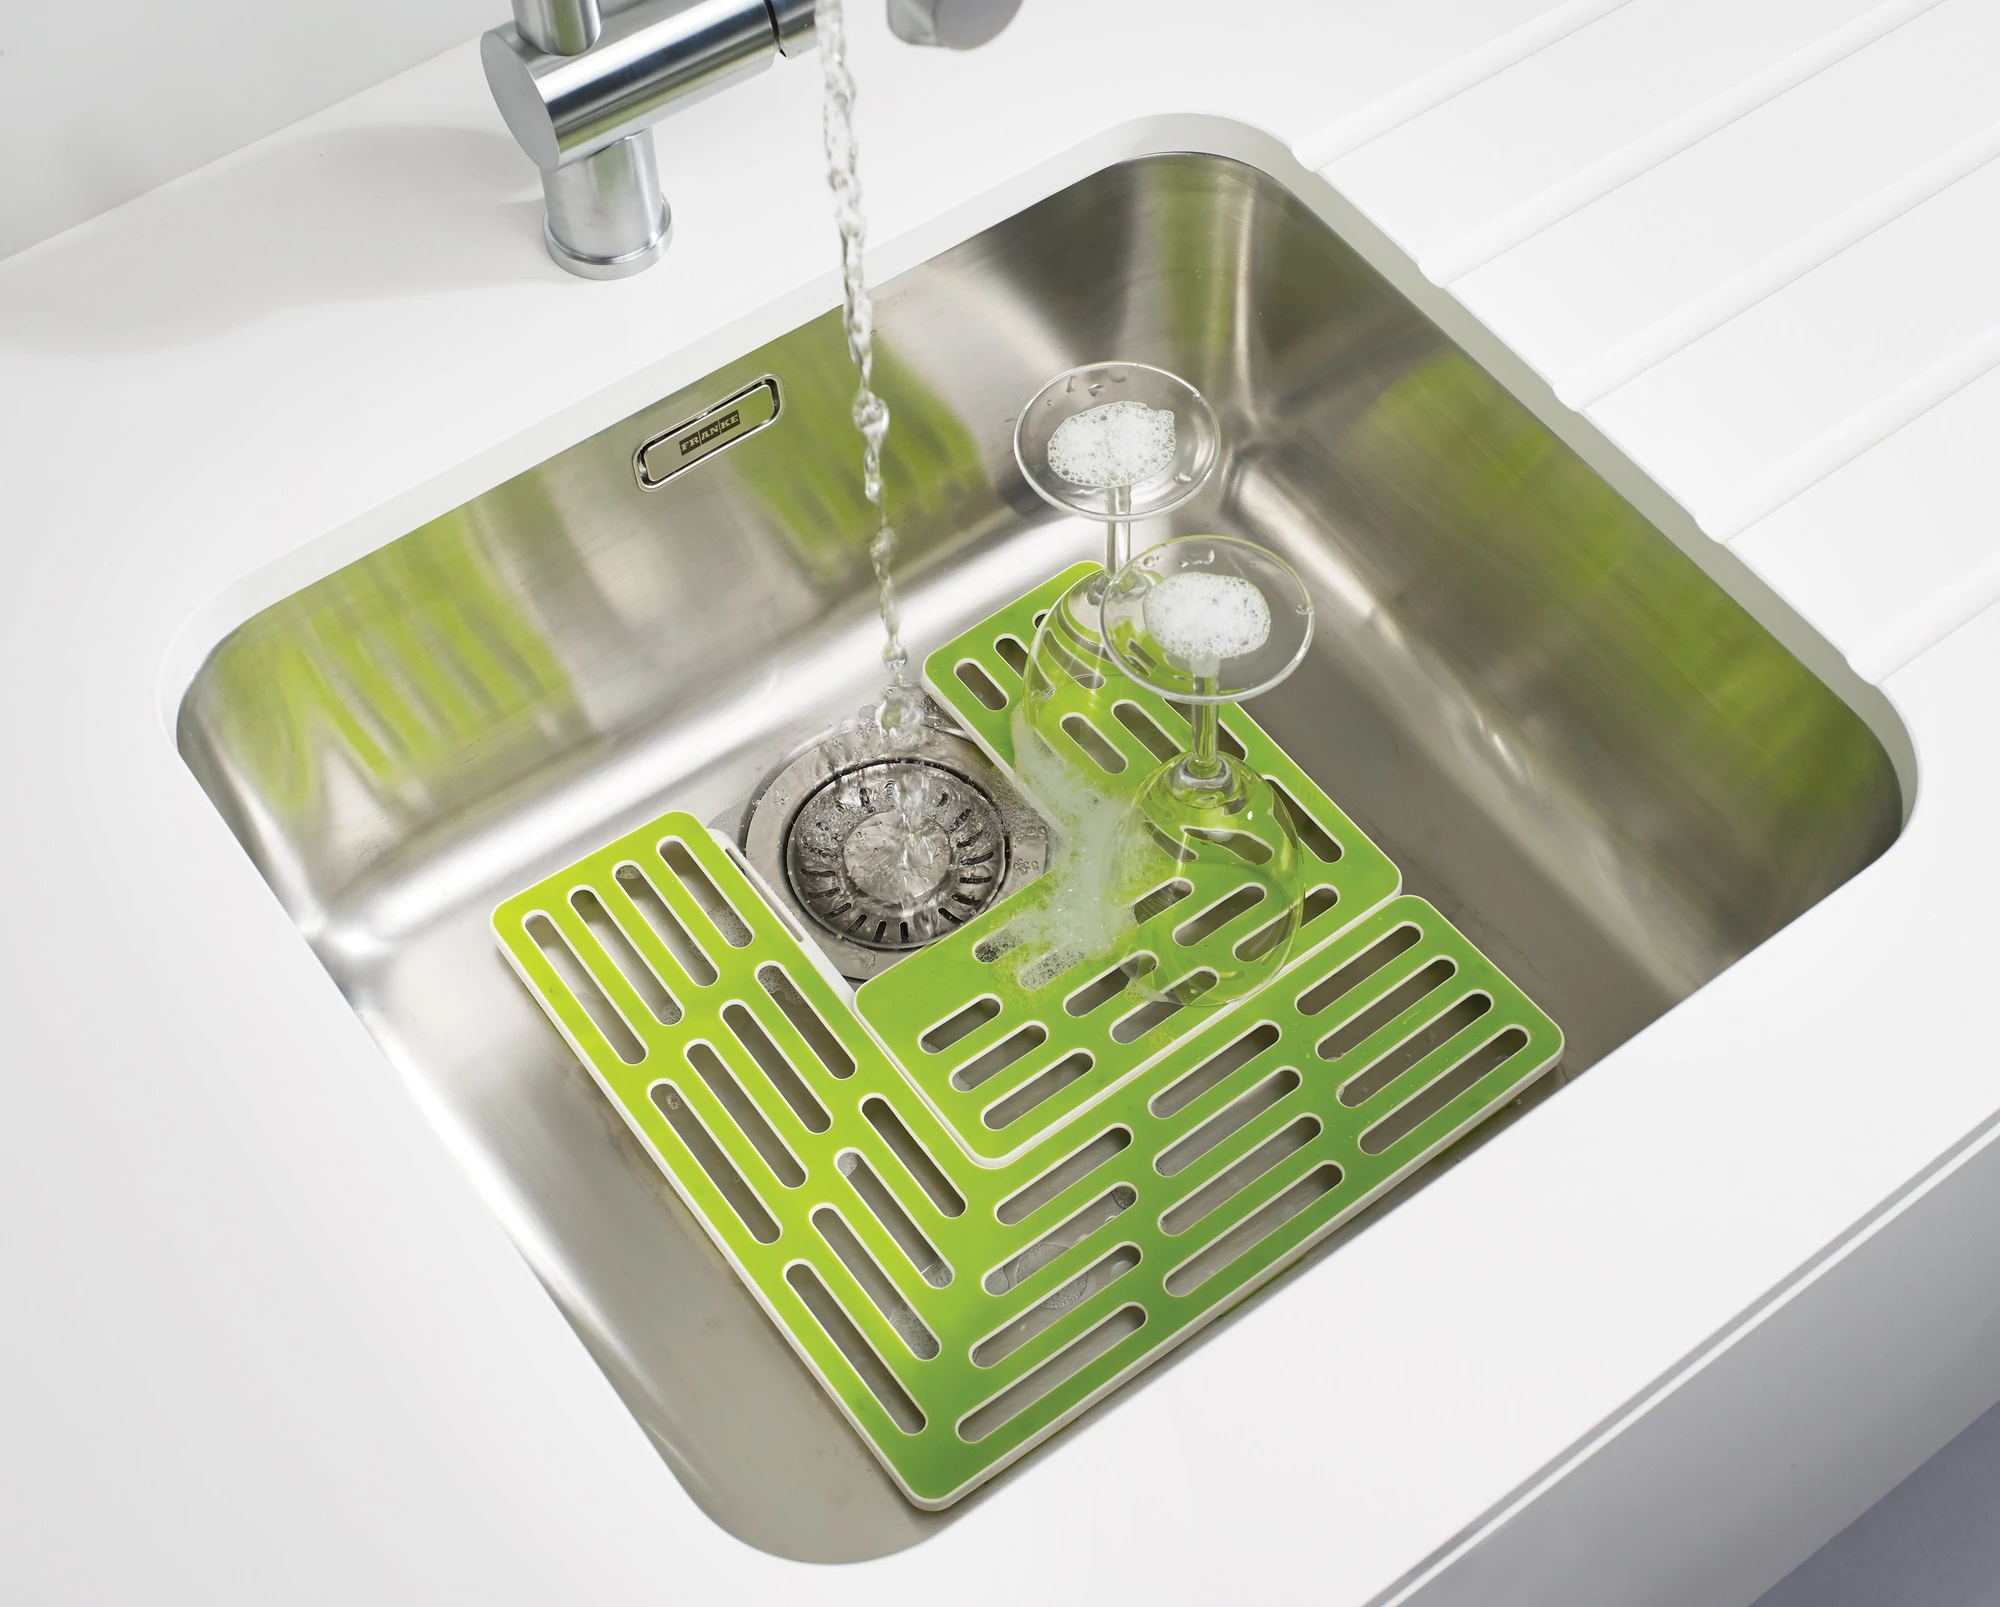 Joseph & Joseph Tappetino per Lavello regolabile Sink Saver – Modulo